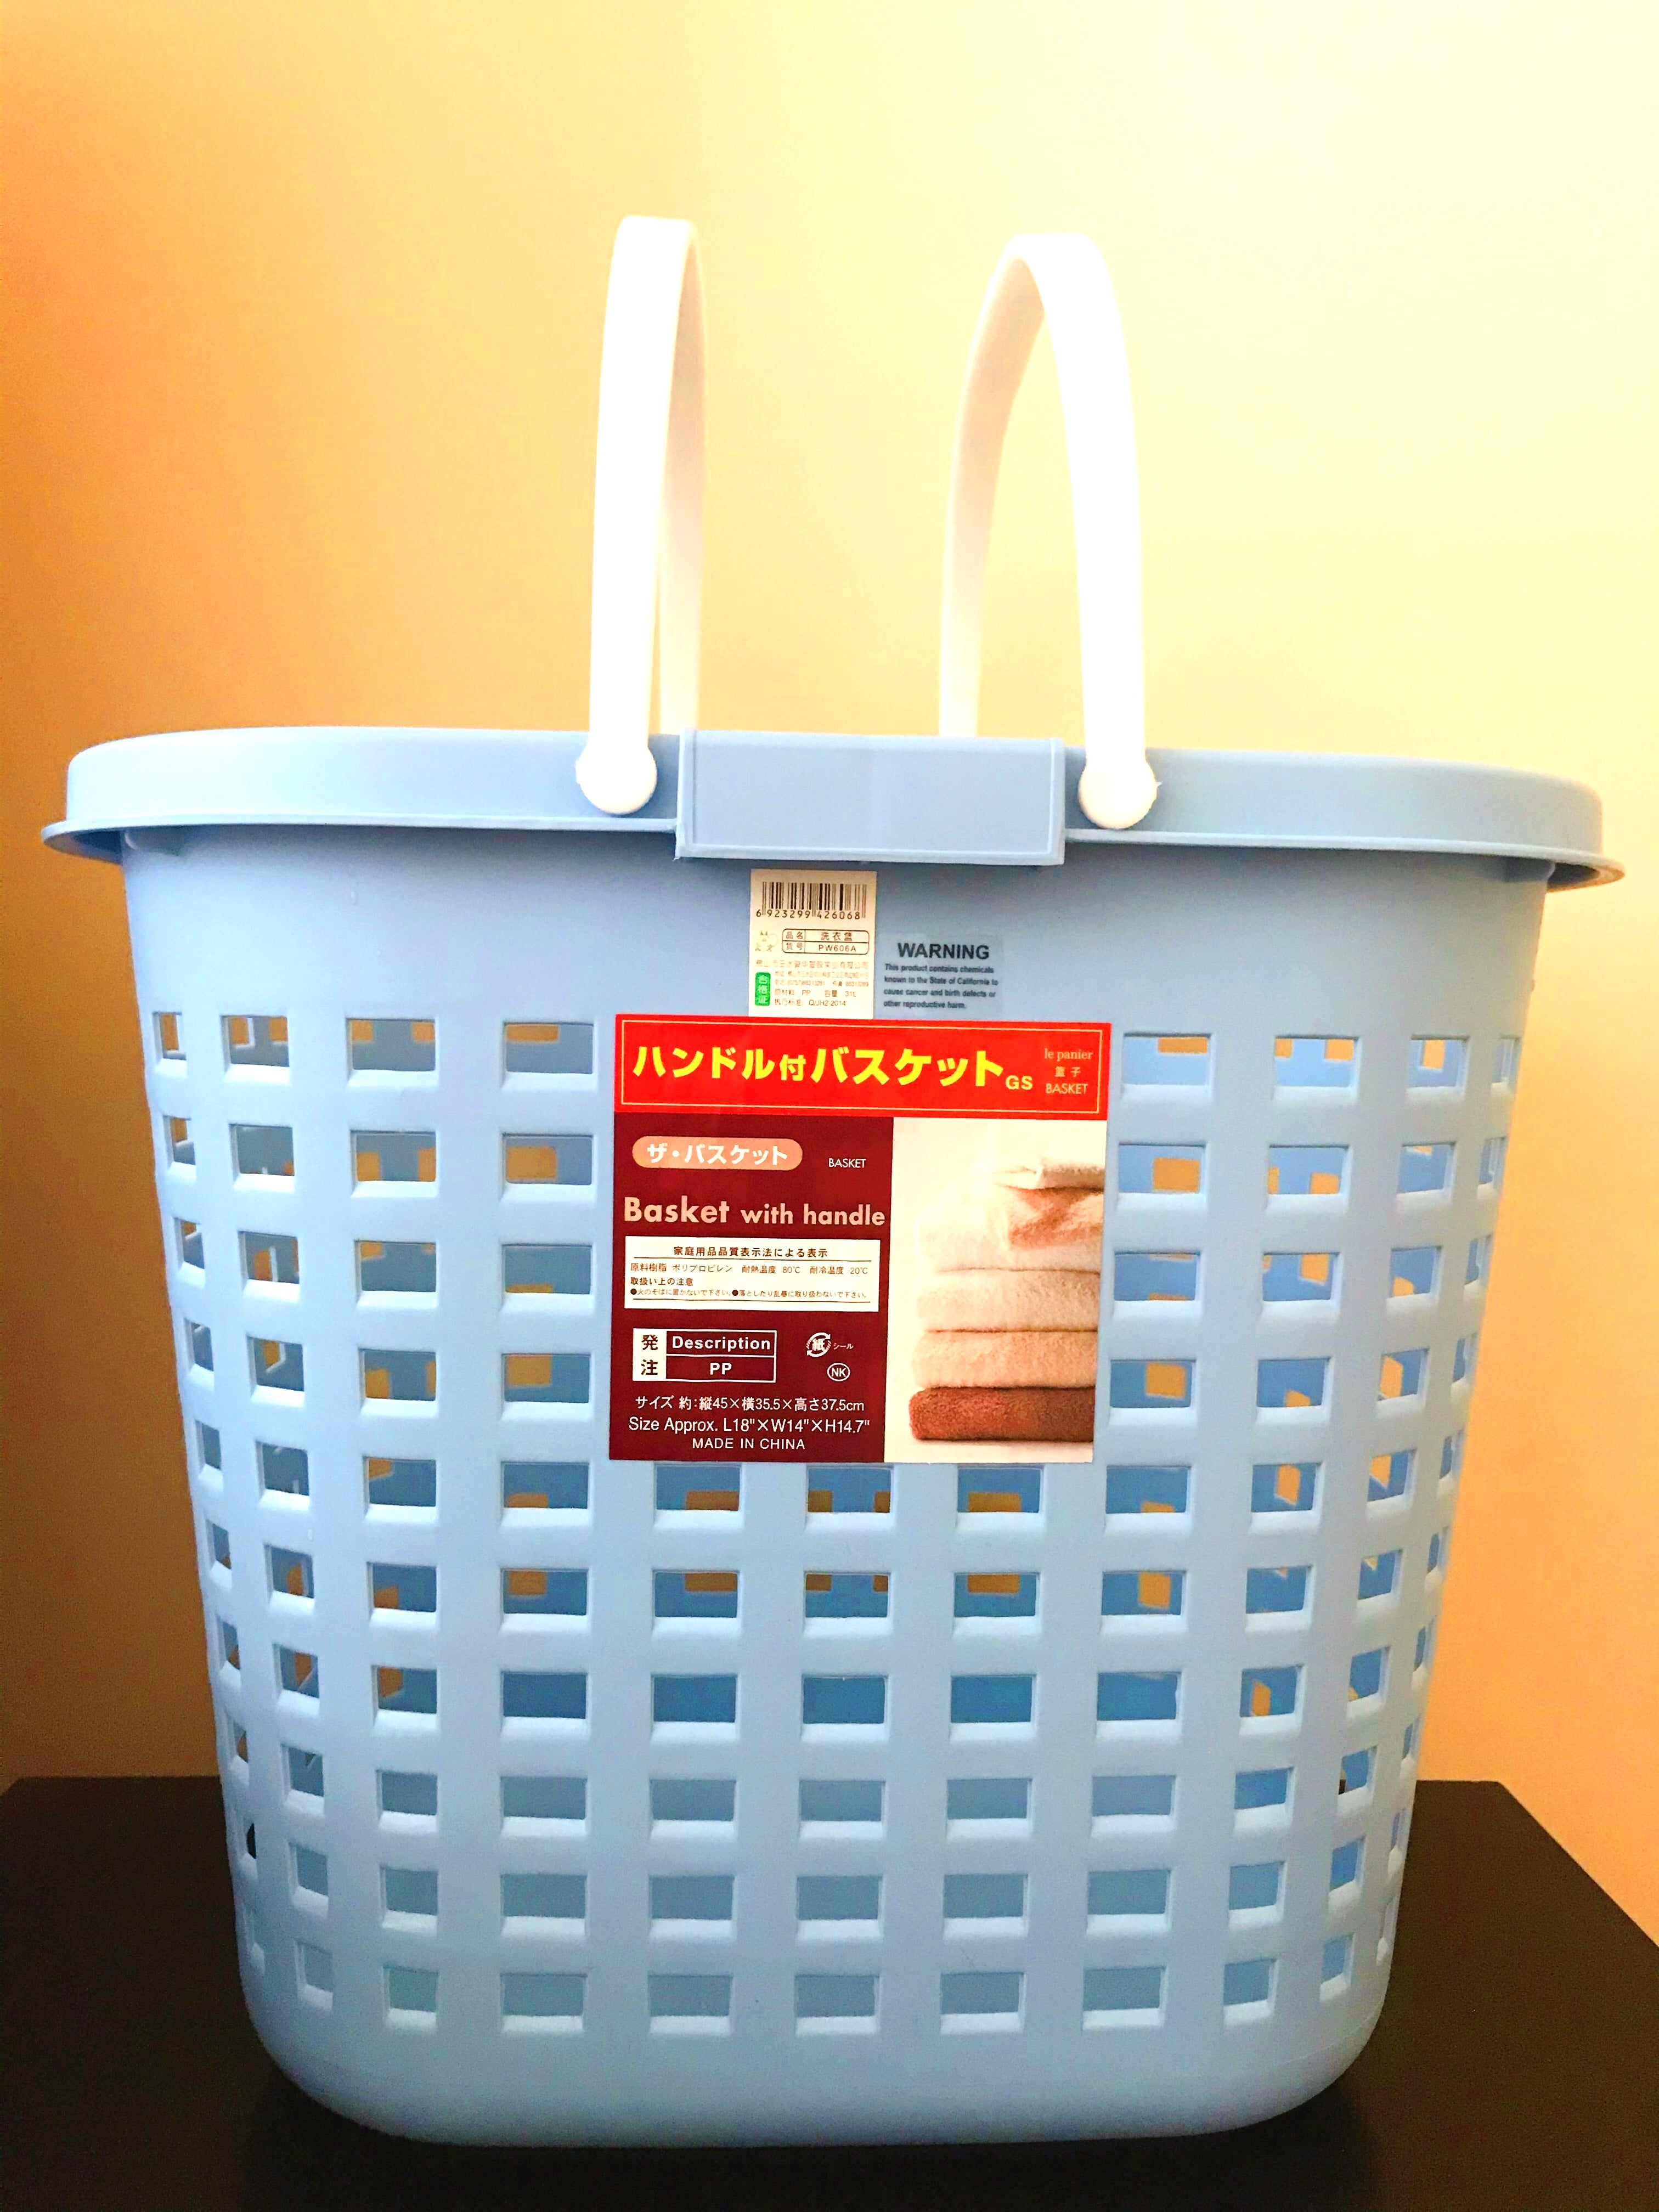 洗衣篮 L18”X W14”X H14.7”